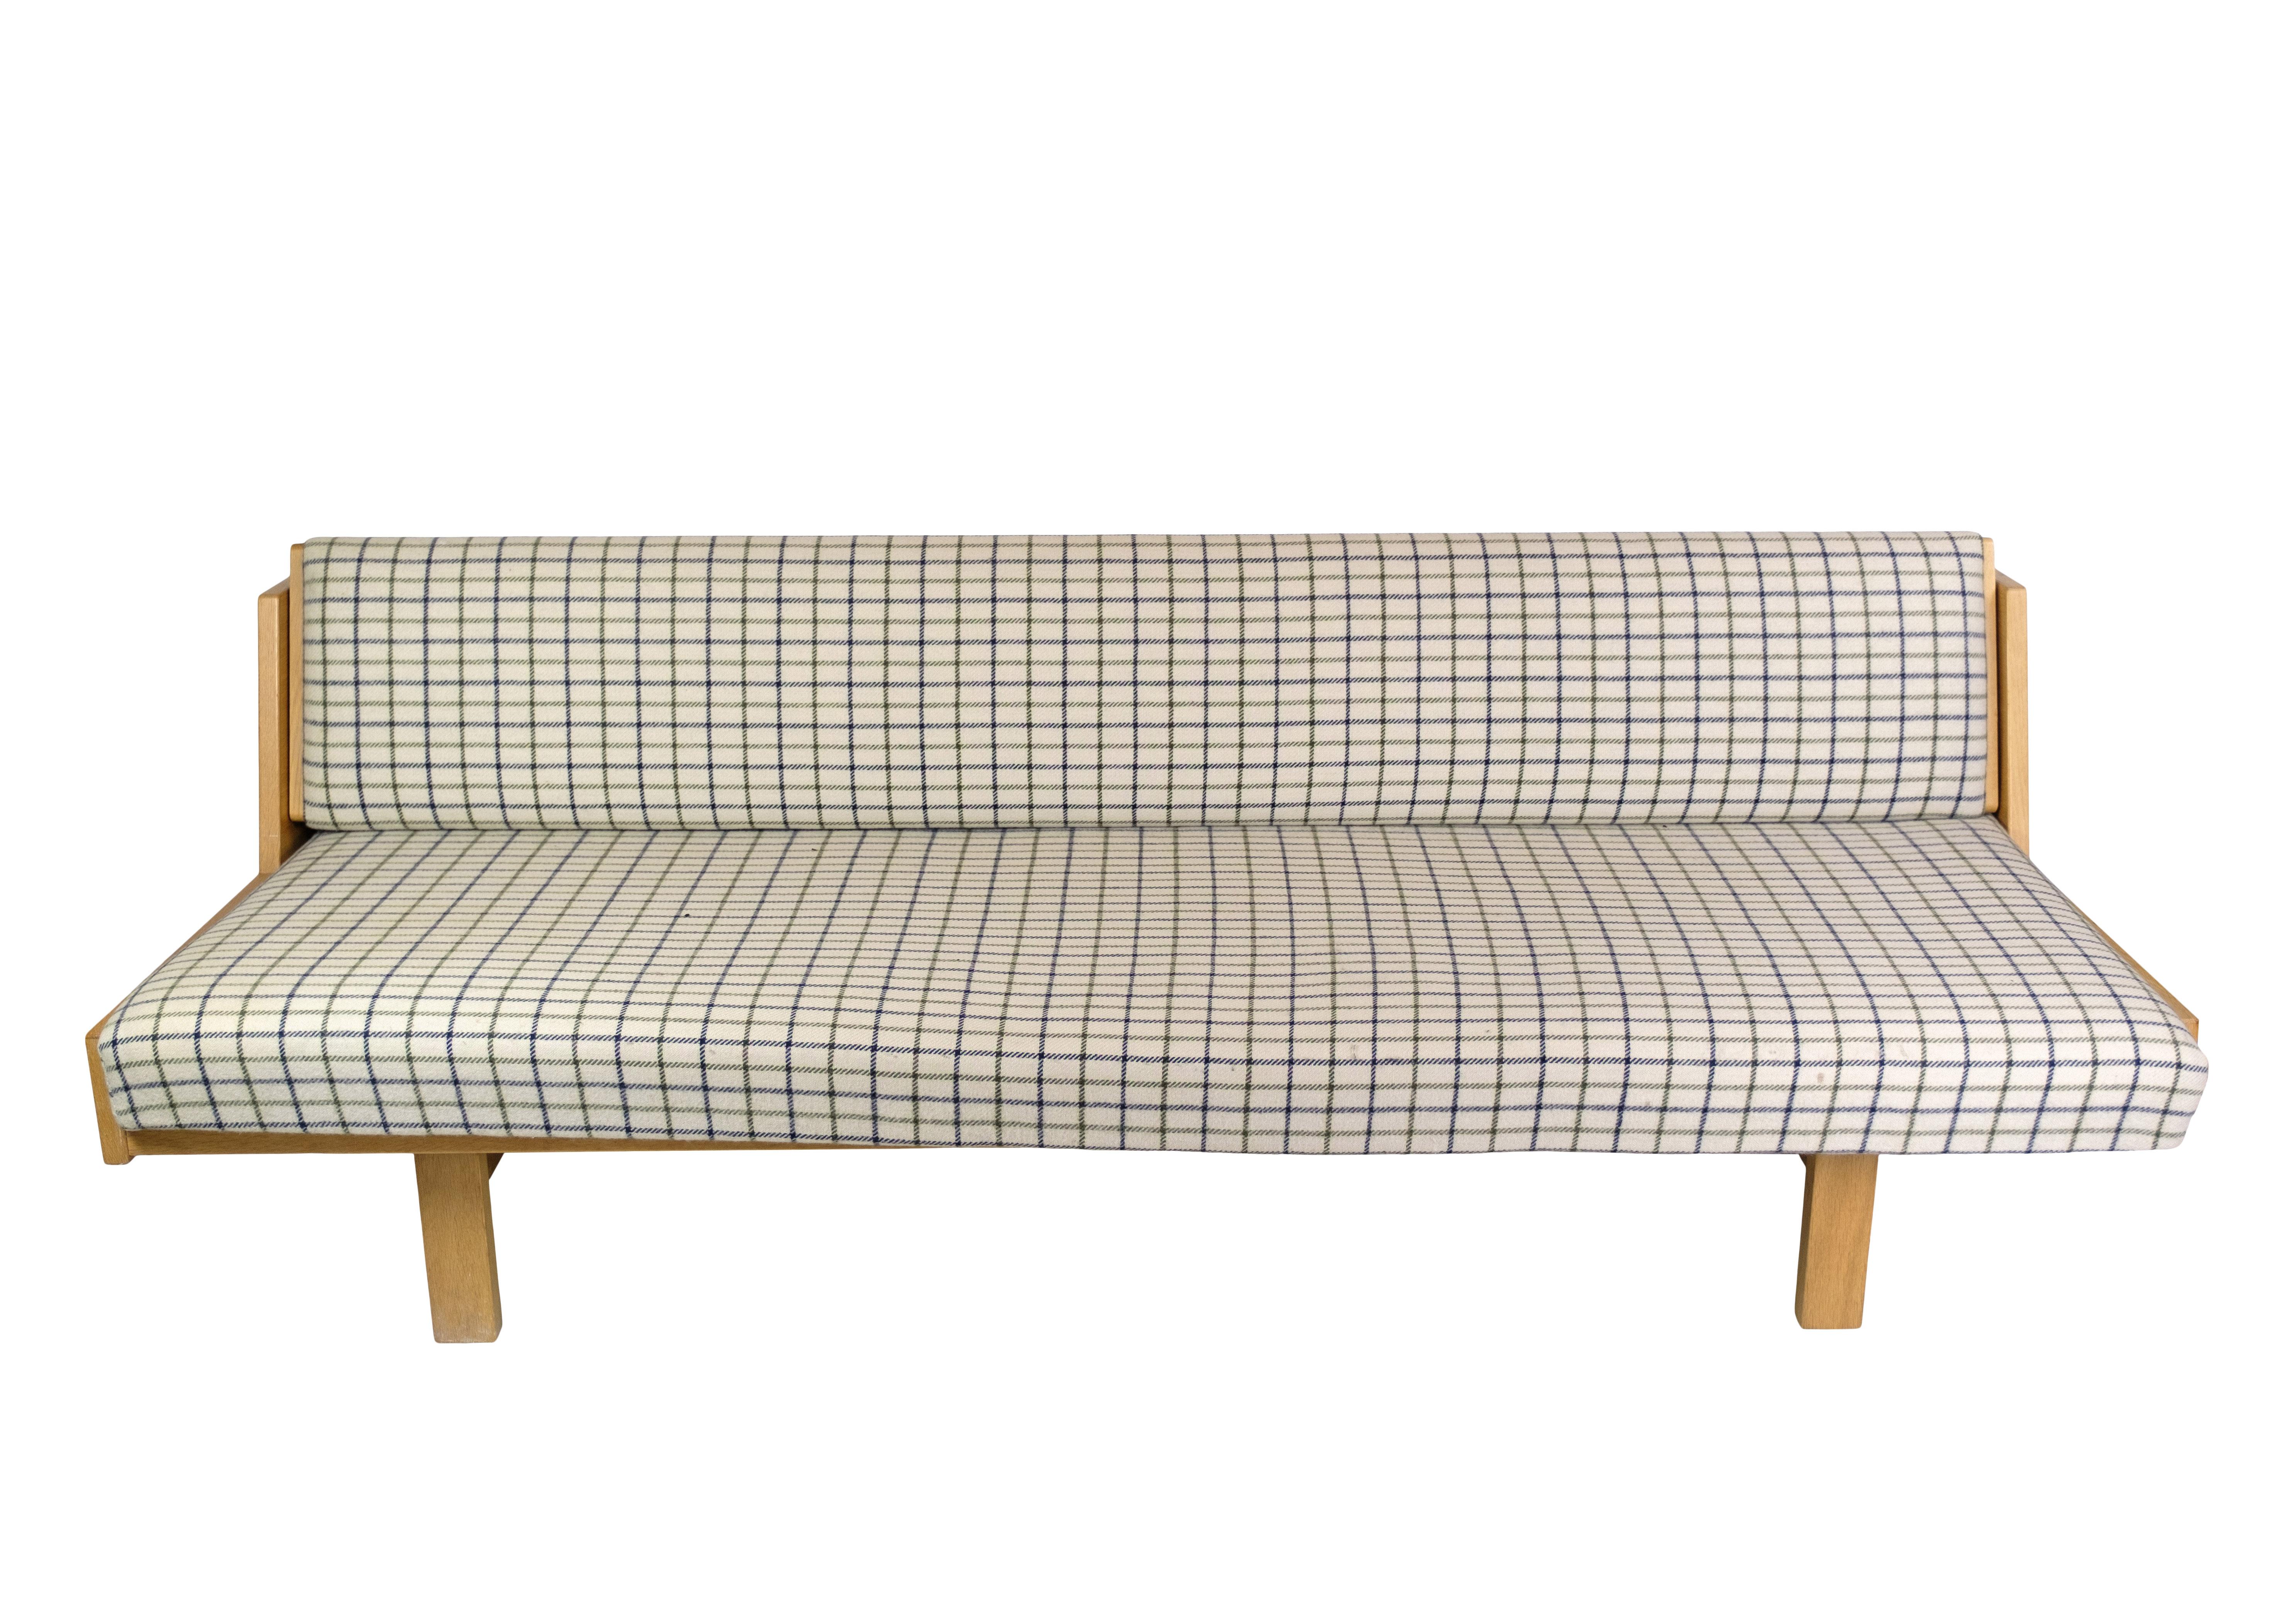 Le lit de jour / canapé en chêne de Hans J. Wegner est un design unique datant des années 1960, créé avec une esthétique intemporelle et fabriqué à GETAMA. Il séduit par son cadre en chêne massif et ses coussins en tissu léger au charmant motif à